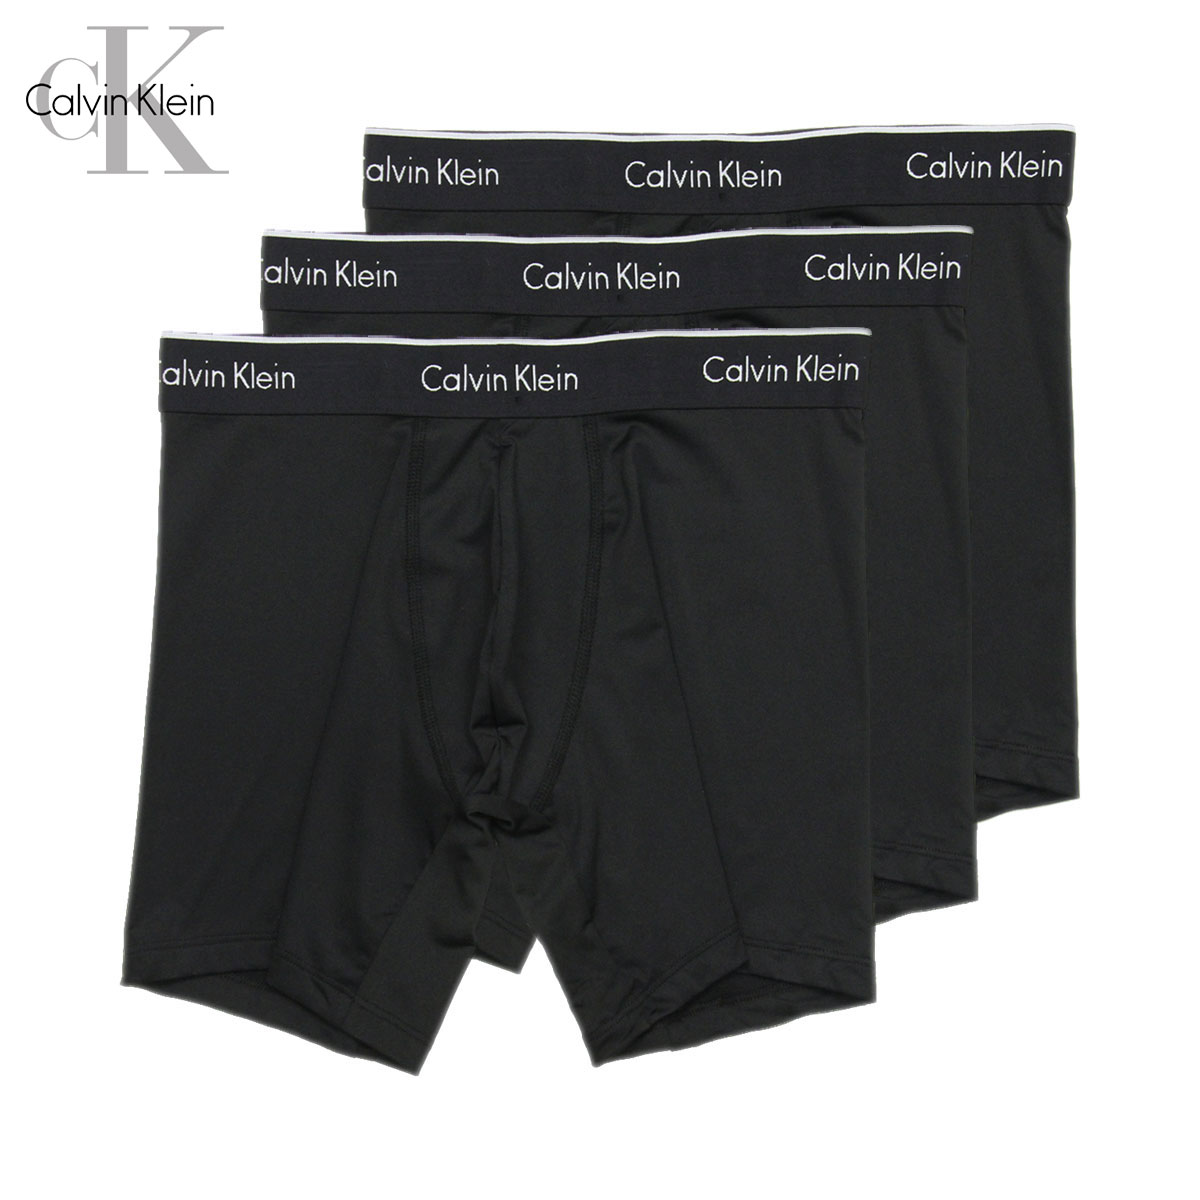 カルバン・クライン カルバンクライン ボクサーブリーフ メンズ 正規品 Calvin Klein アンダーウェア ボクサーブリーフ 下着 3枚セット マクロファイバー 3PACK MICROFIBER BOXER BRIEFS